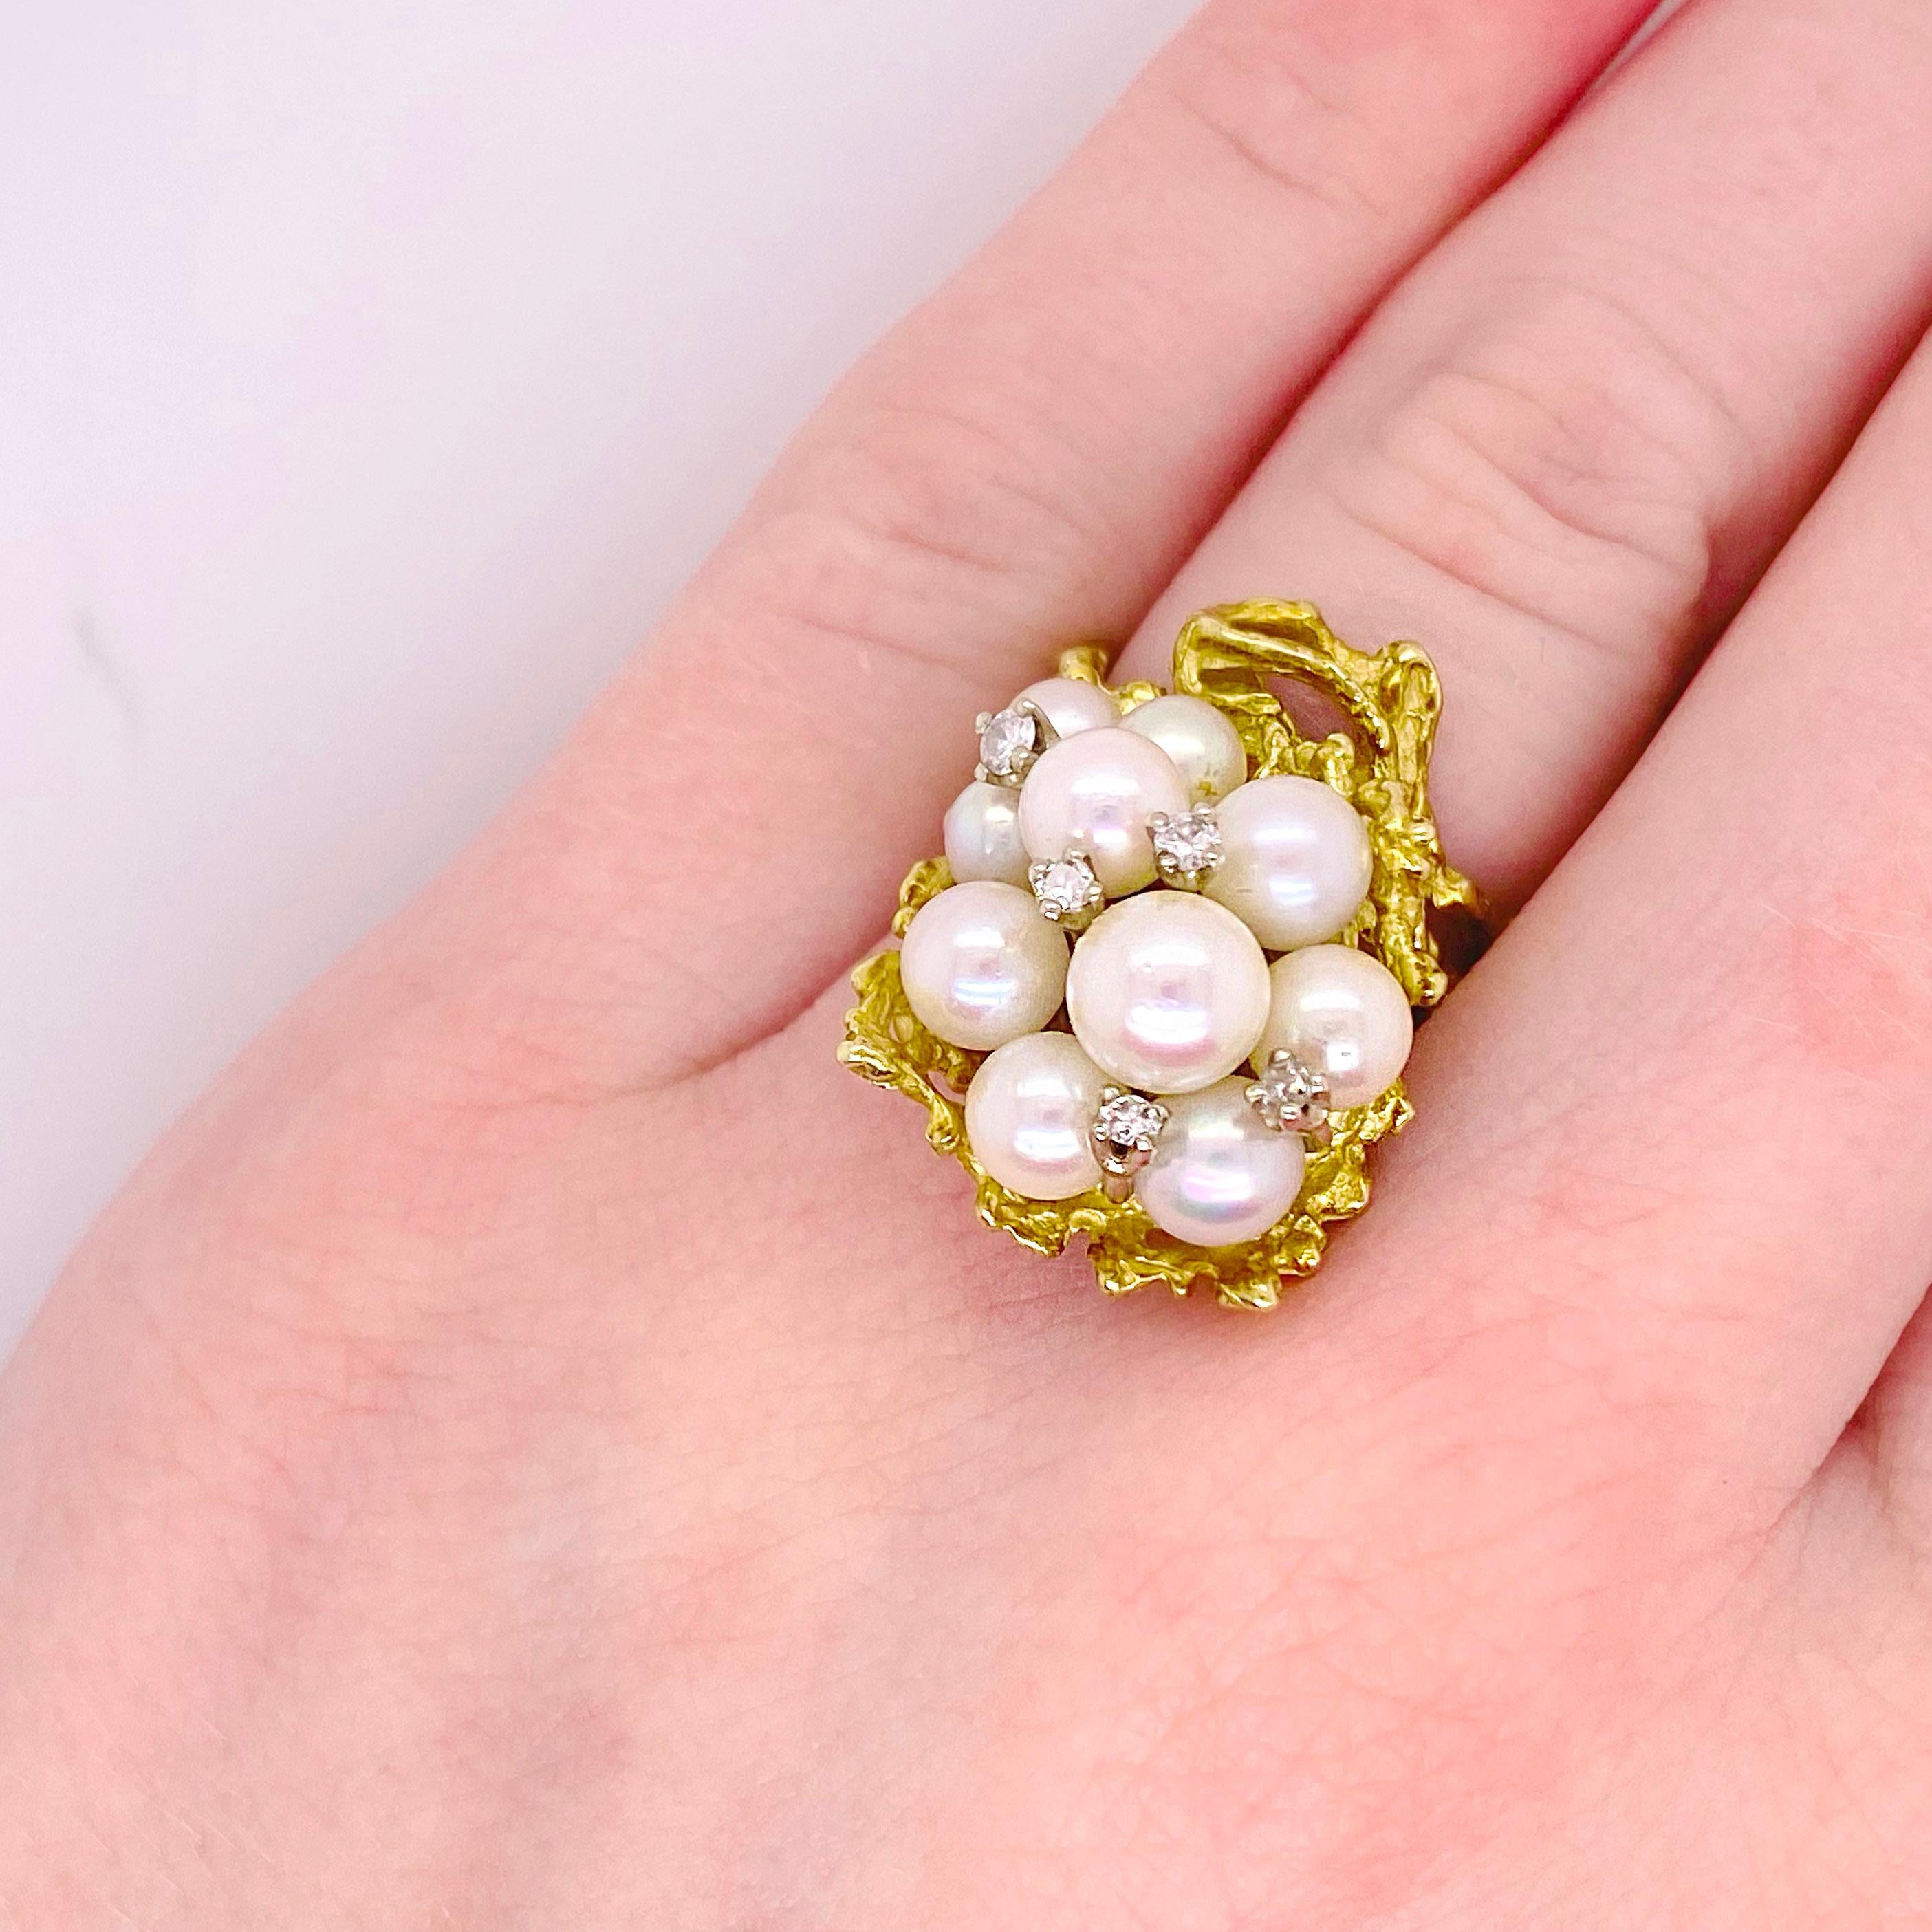 Dieser atemberaubende Ring mit Akoya-Perlen und Diamanten ist ein wunderschöner, einzigartiger Ring, der jeden Look ergänzt. Die einzigartig gearbeitete Fassung verleiht dem Ring ein organisches, ozeanisches Gefühl. 
Metallqualität: 14 kt Gelbgold